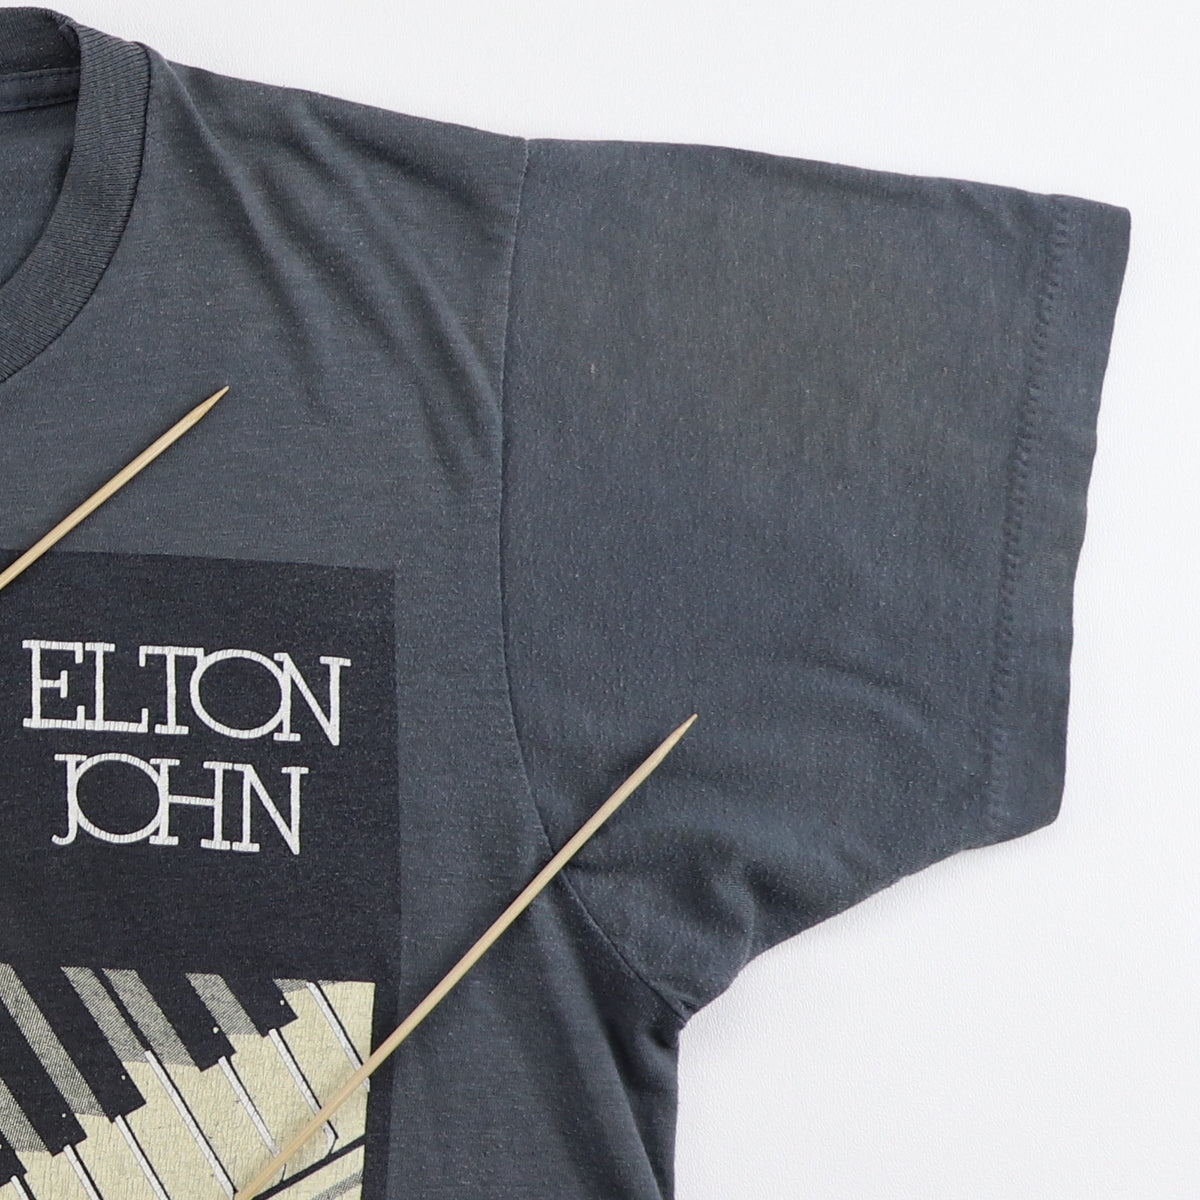 1986 Elton John World Tour Shirt